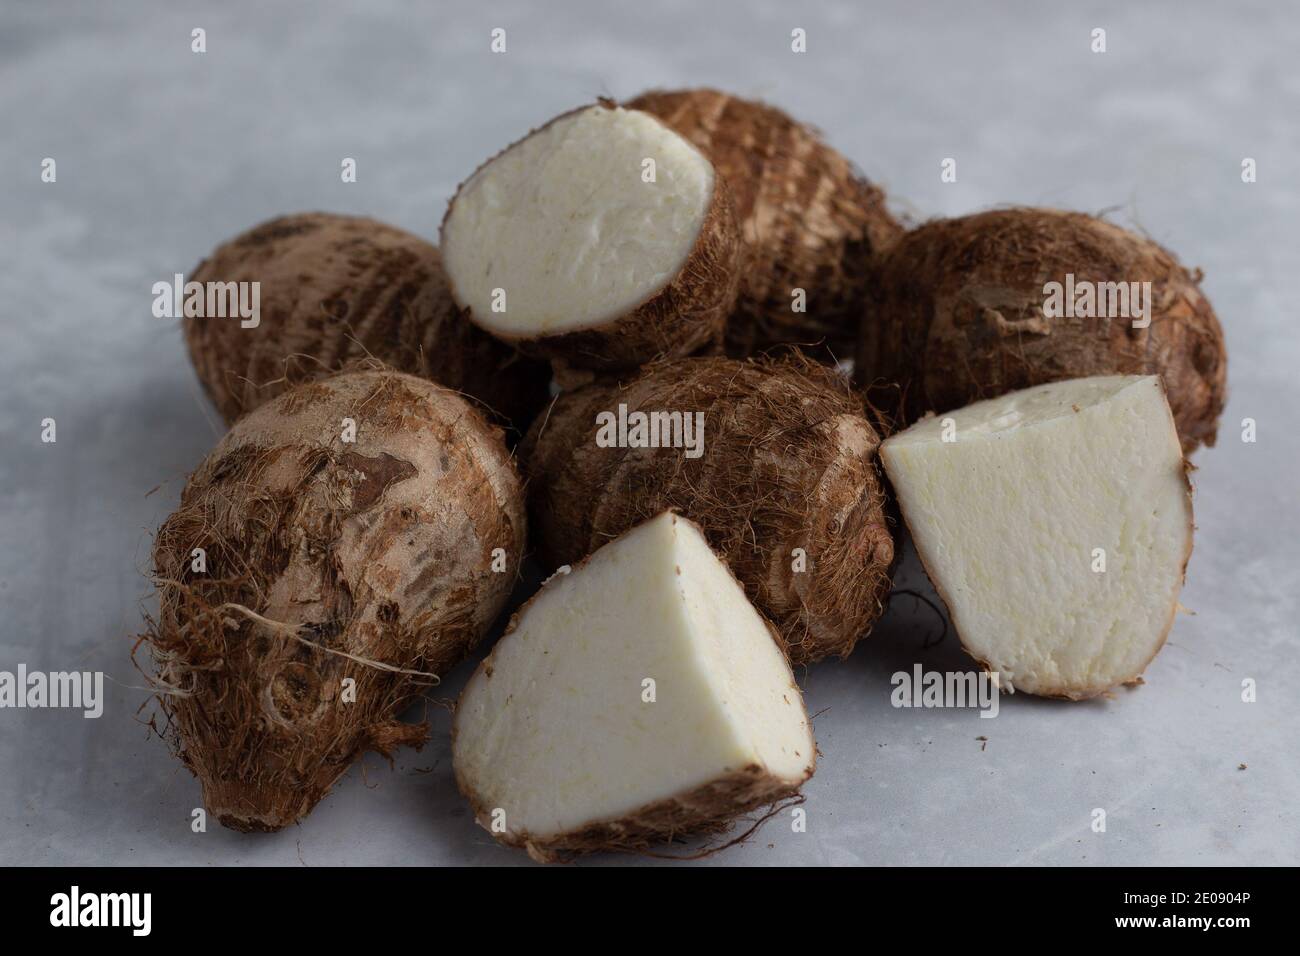 Dasheen. Eddo. Taro. Tropical root crop Stock Photo